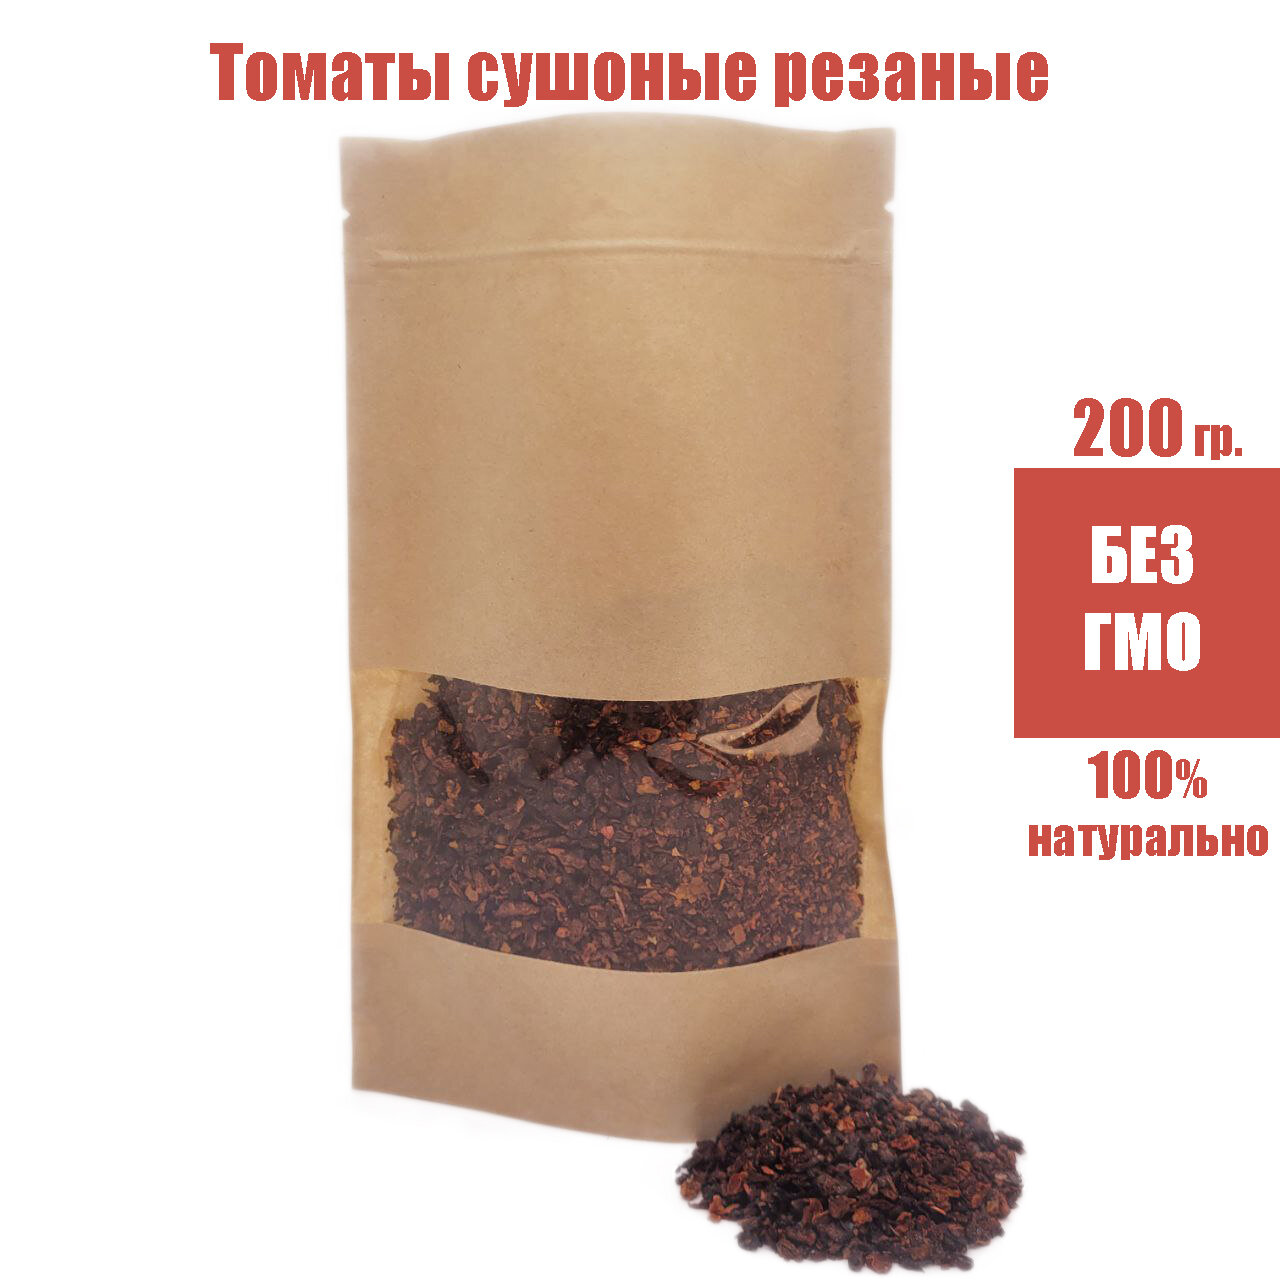 Томаты (помидоры) резаные сушеные натуральные, томат (помидор) сушеный. 200 гр.